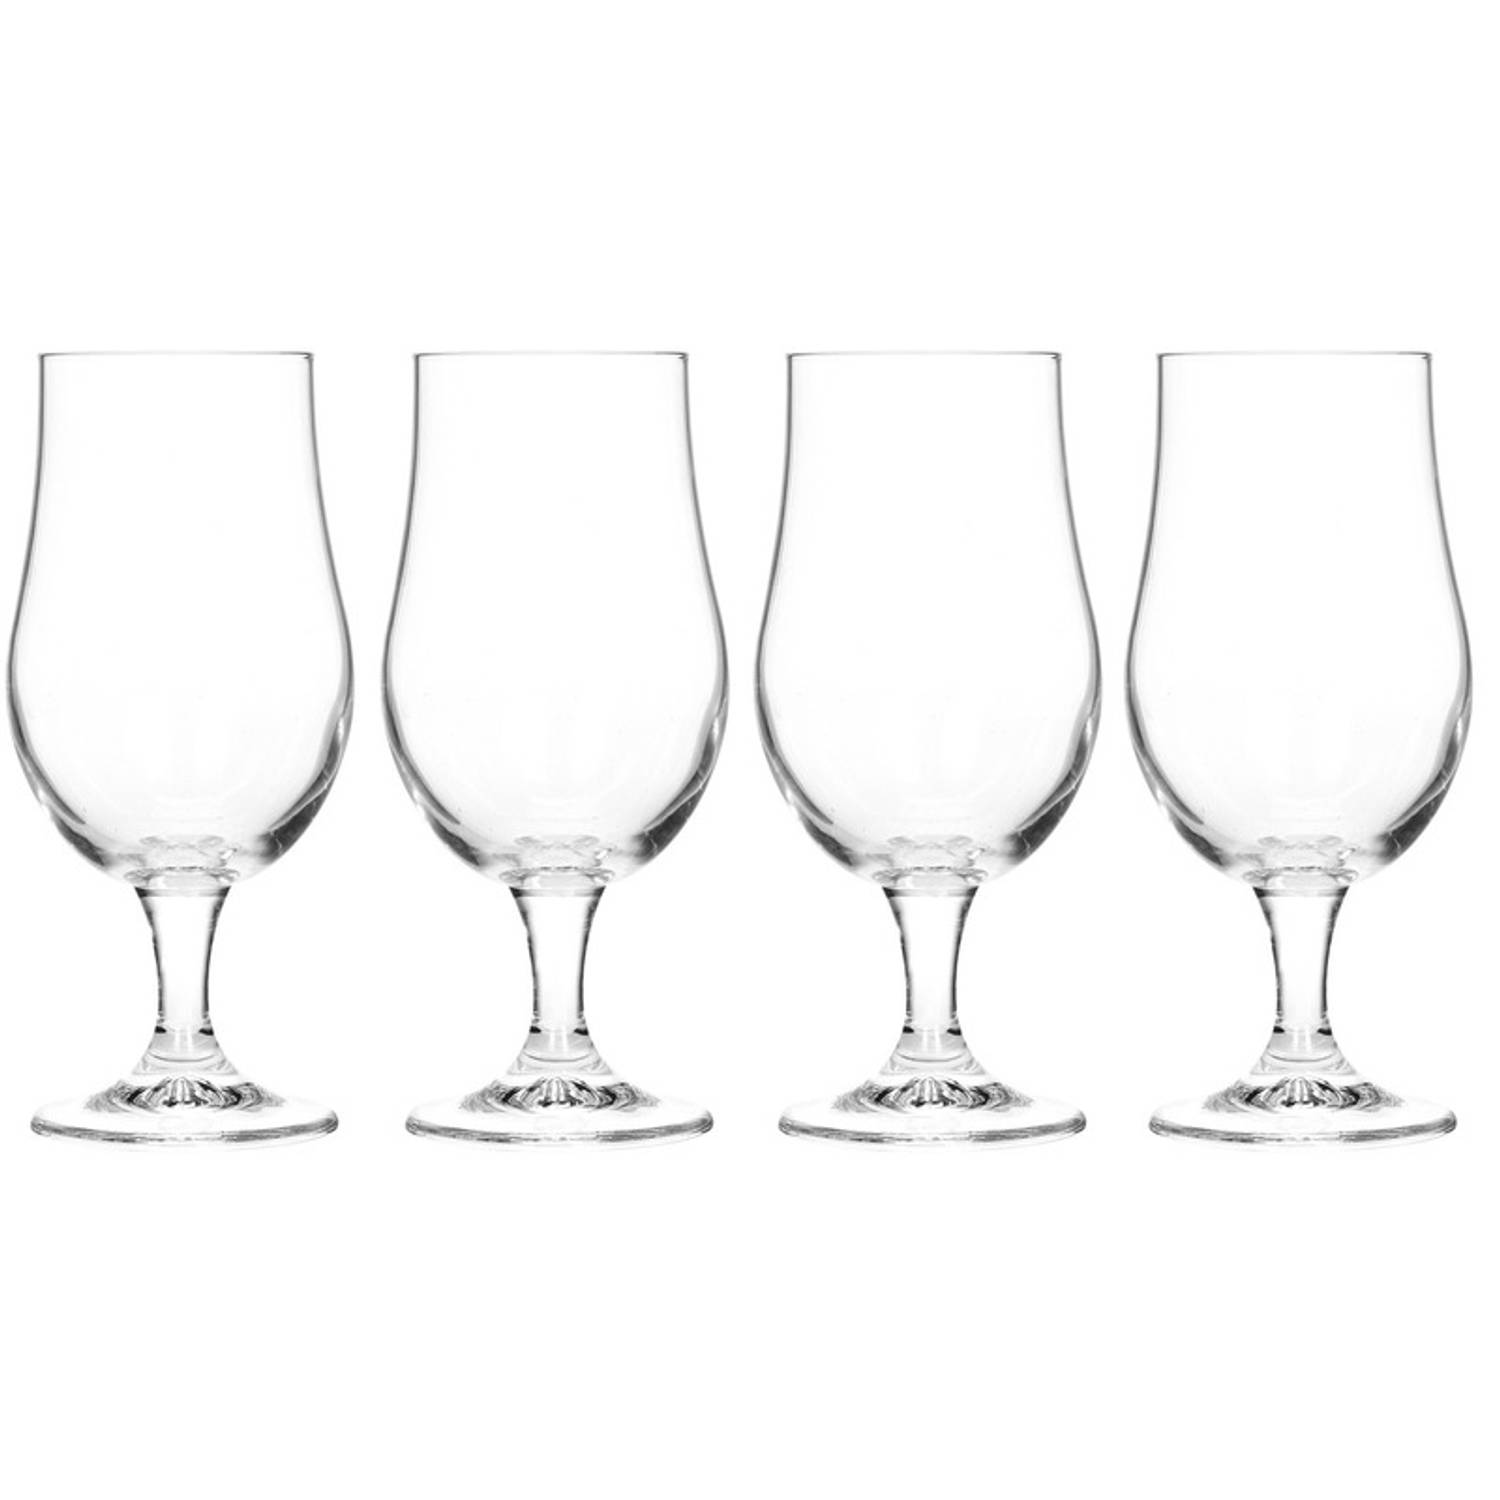 8x Glazen Voor Speciaalbier 18 Cm Bierglazen